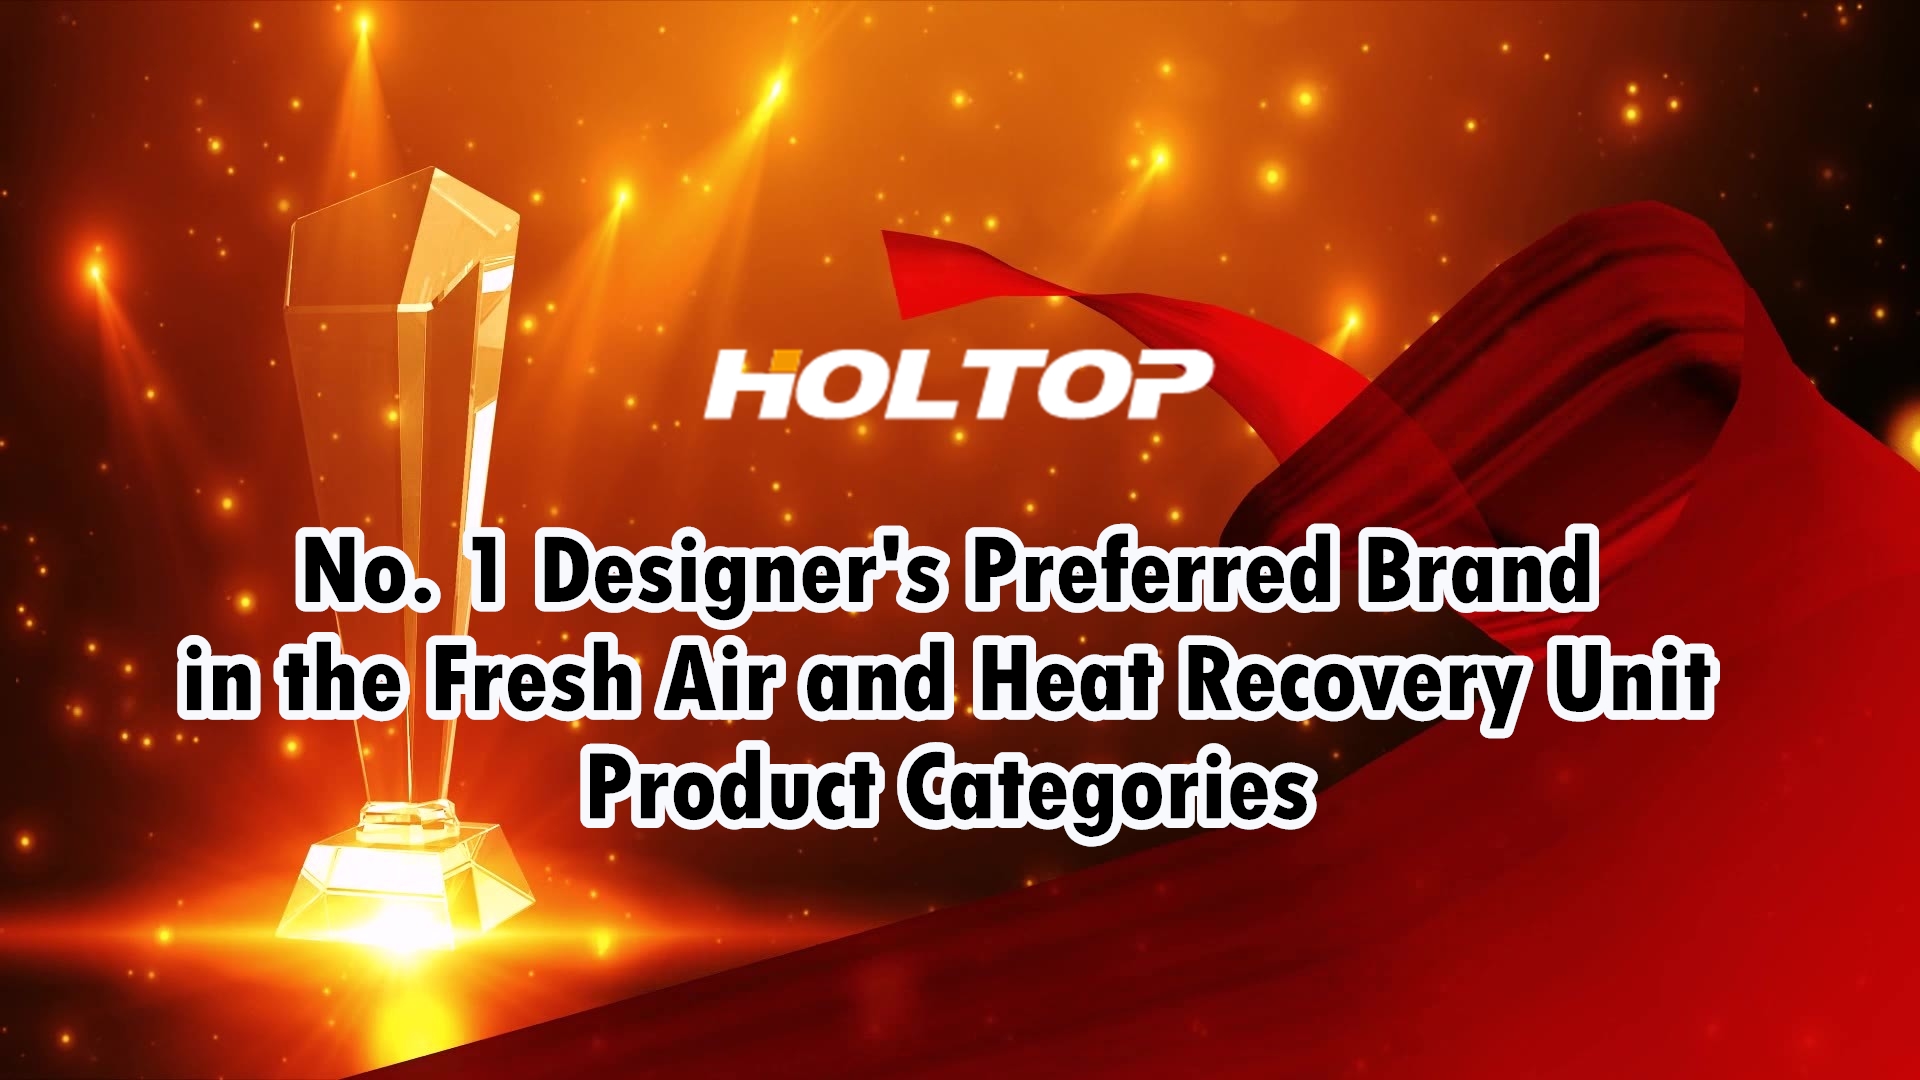 HOLTOP je brend broj 1 dizajnera koji preferira u kategorijama proizvoda jedinica za svježi zrak i povrat topline na tržištu Kine